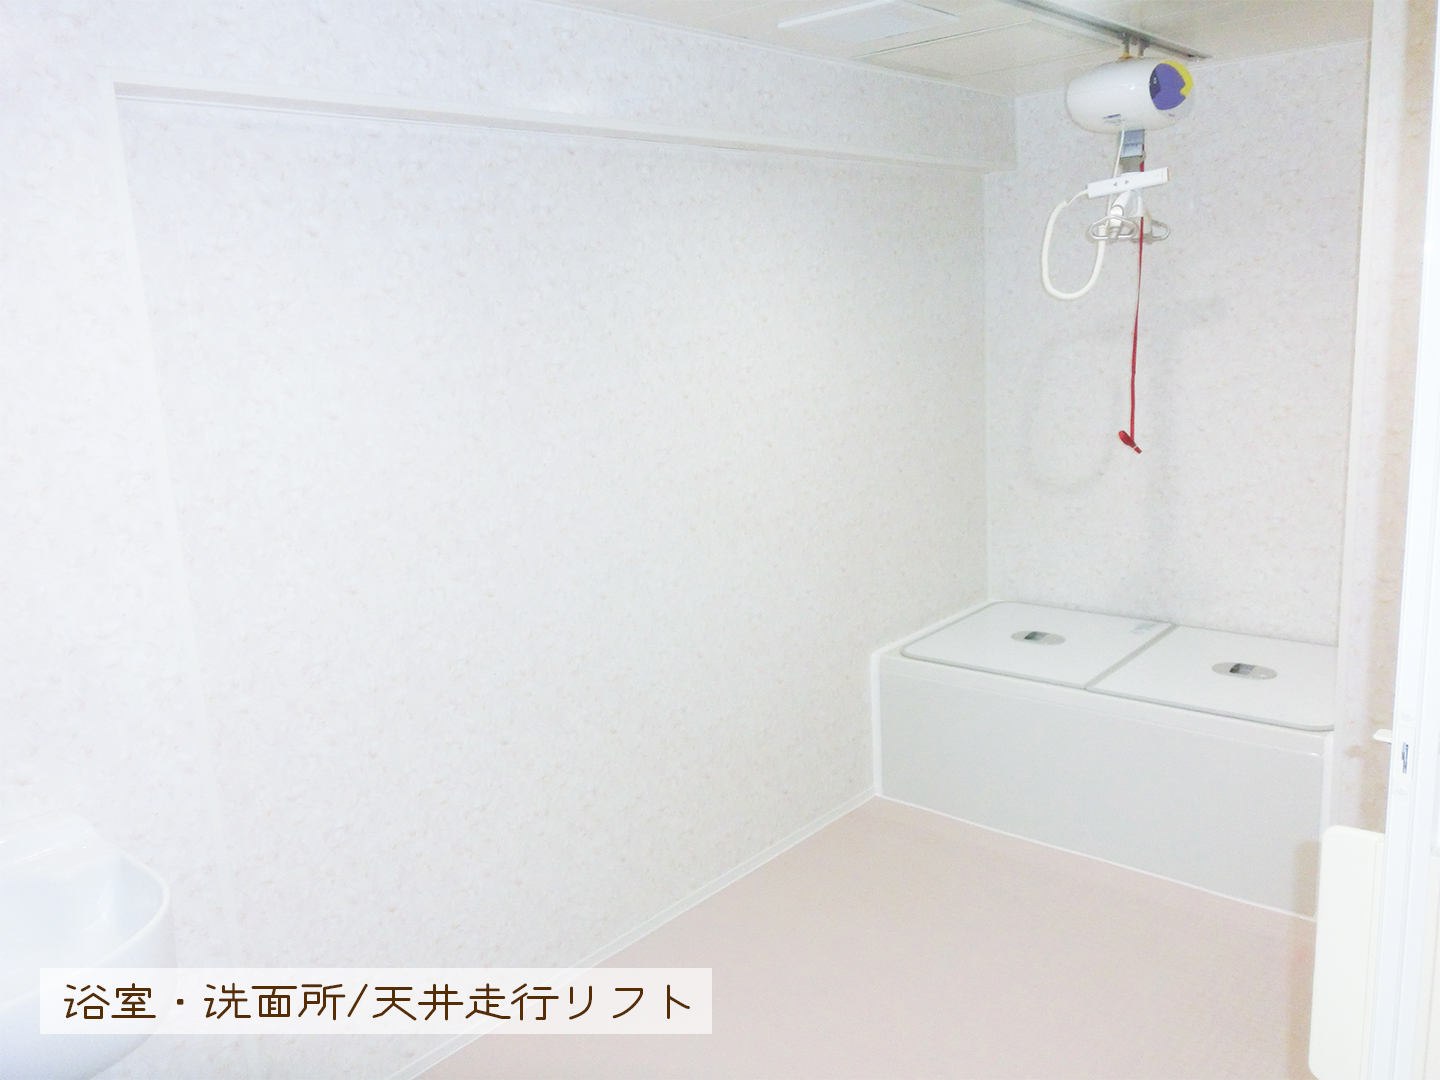 横浜市　グループホームE：浴室、洗面所、天井走行リフト